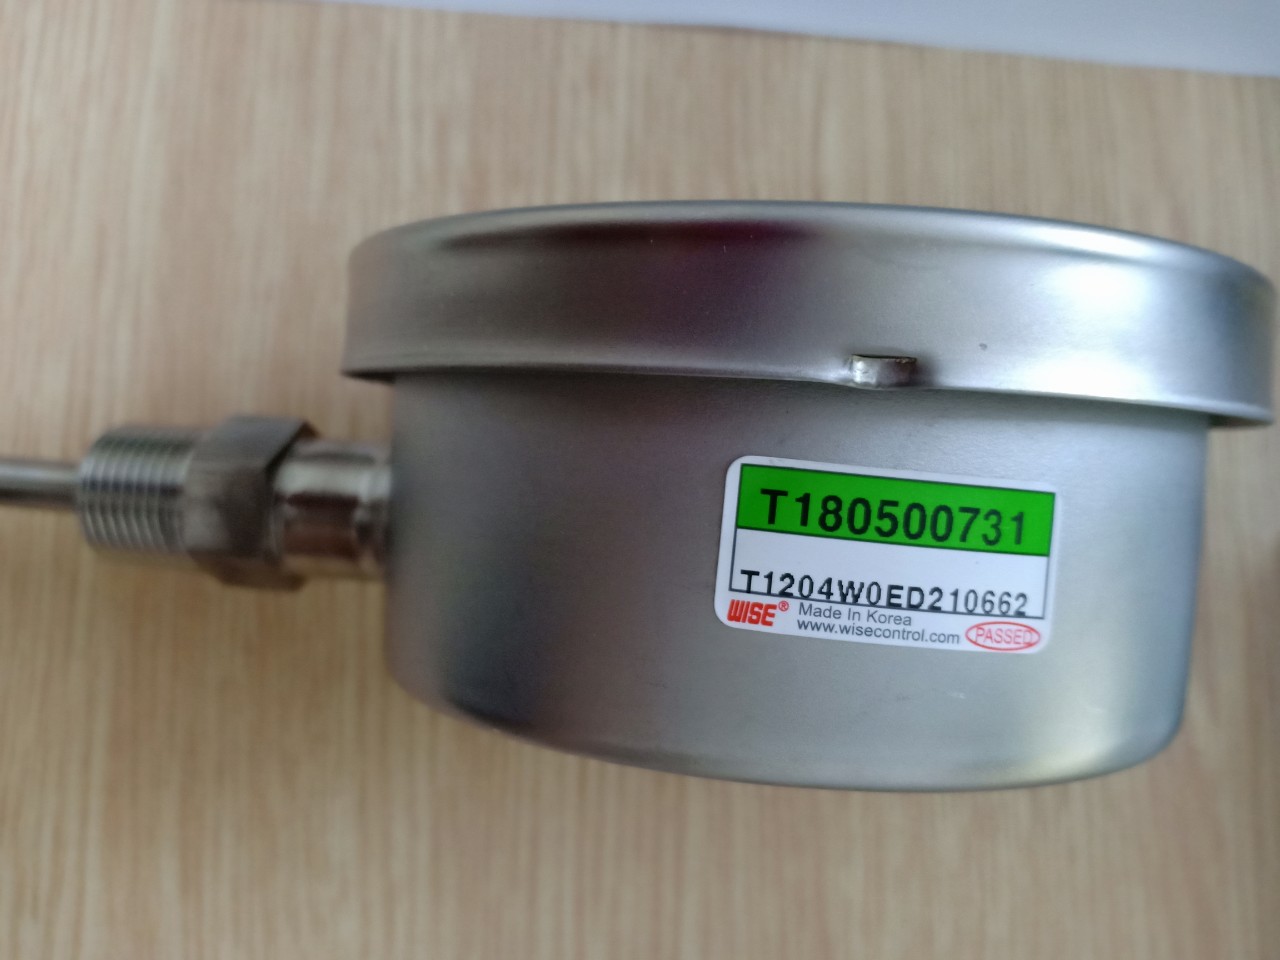 Đồng hồ đo nhiệt độ chân đứng T120, T190 Hàn quốc